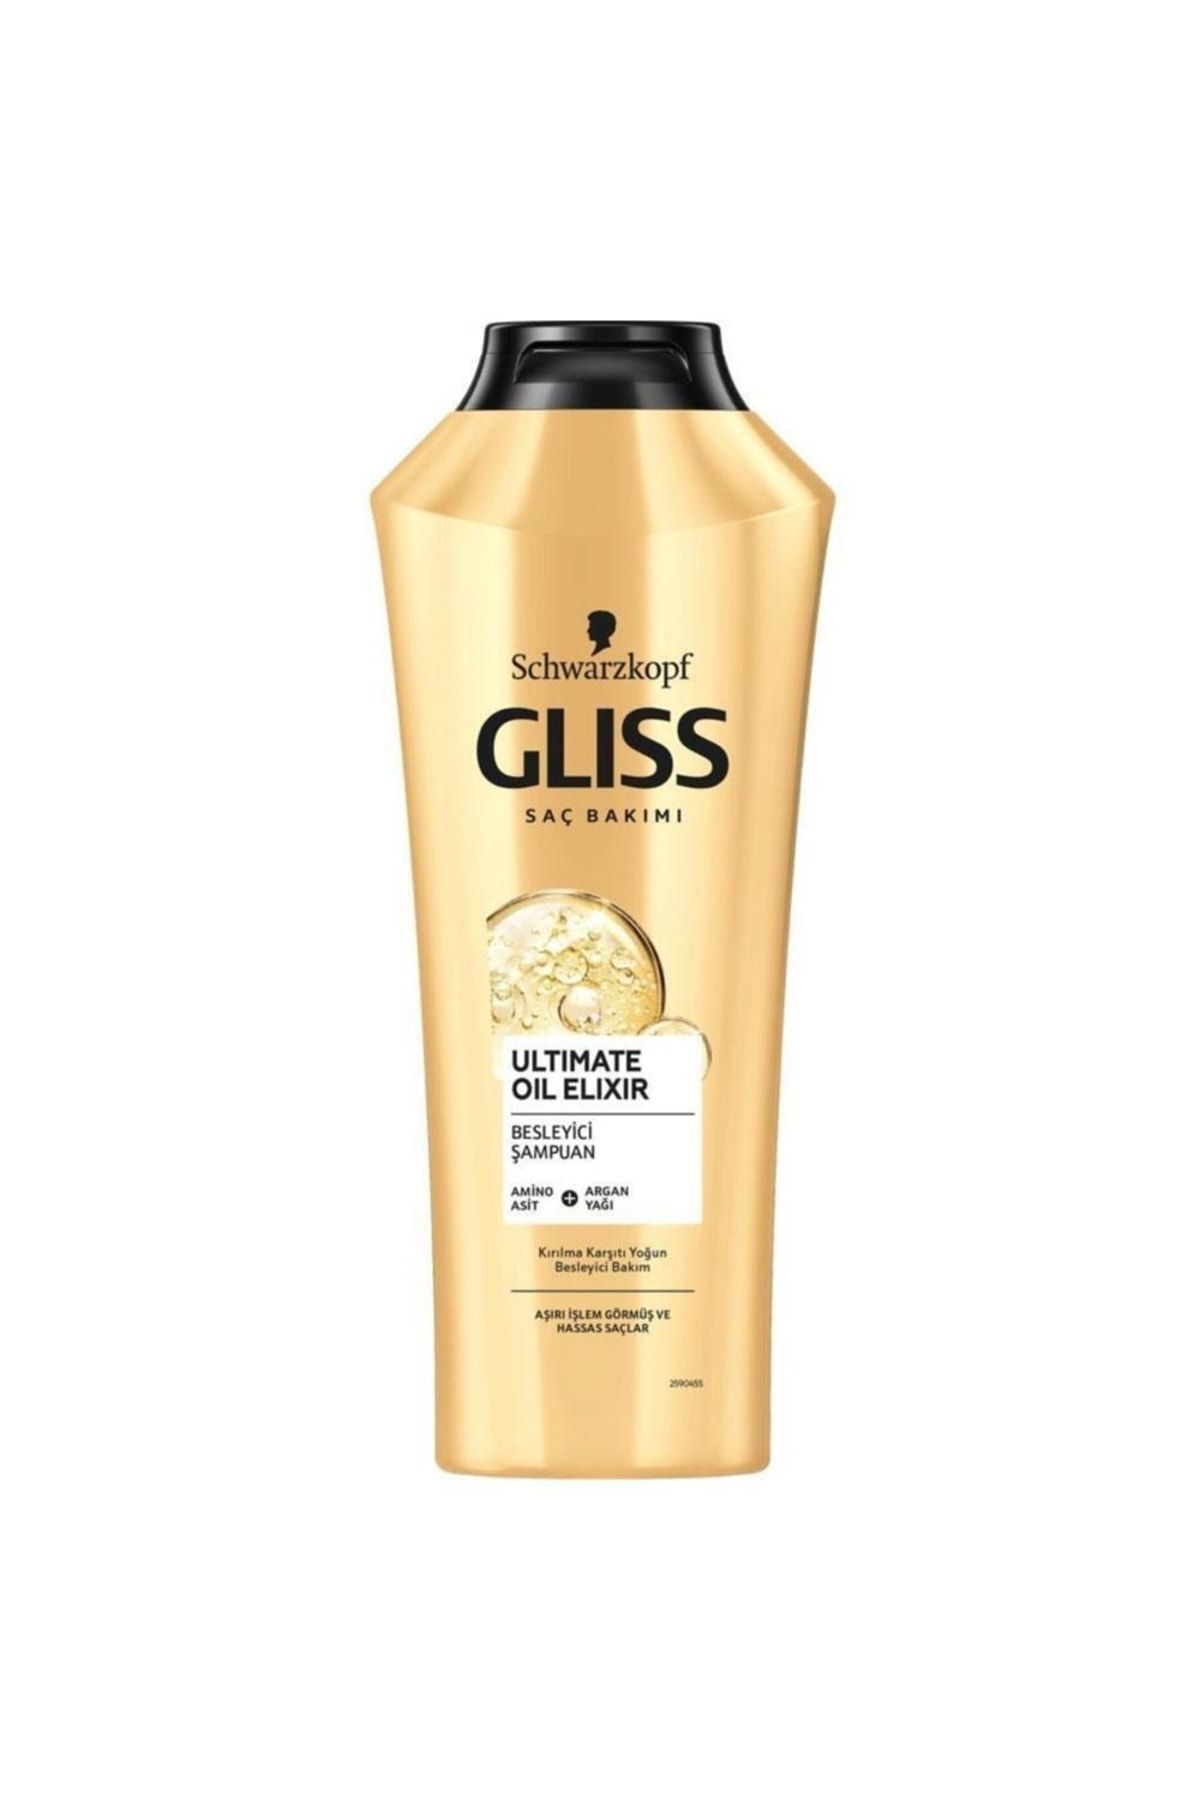 Gliss Ultimate Oil Elixir Yıpranmış Saçlar Için Şampuan 360 ml